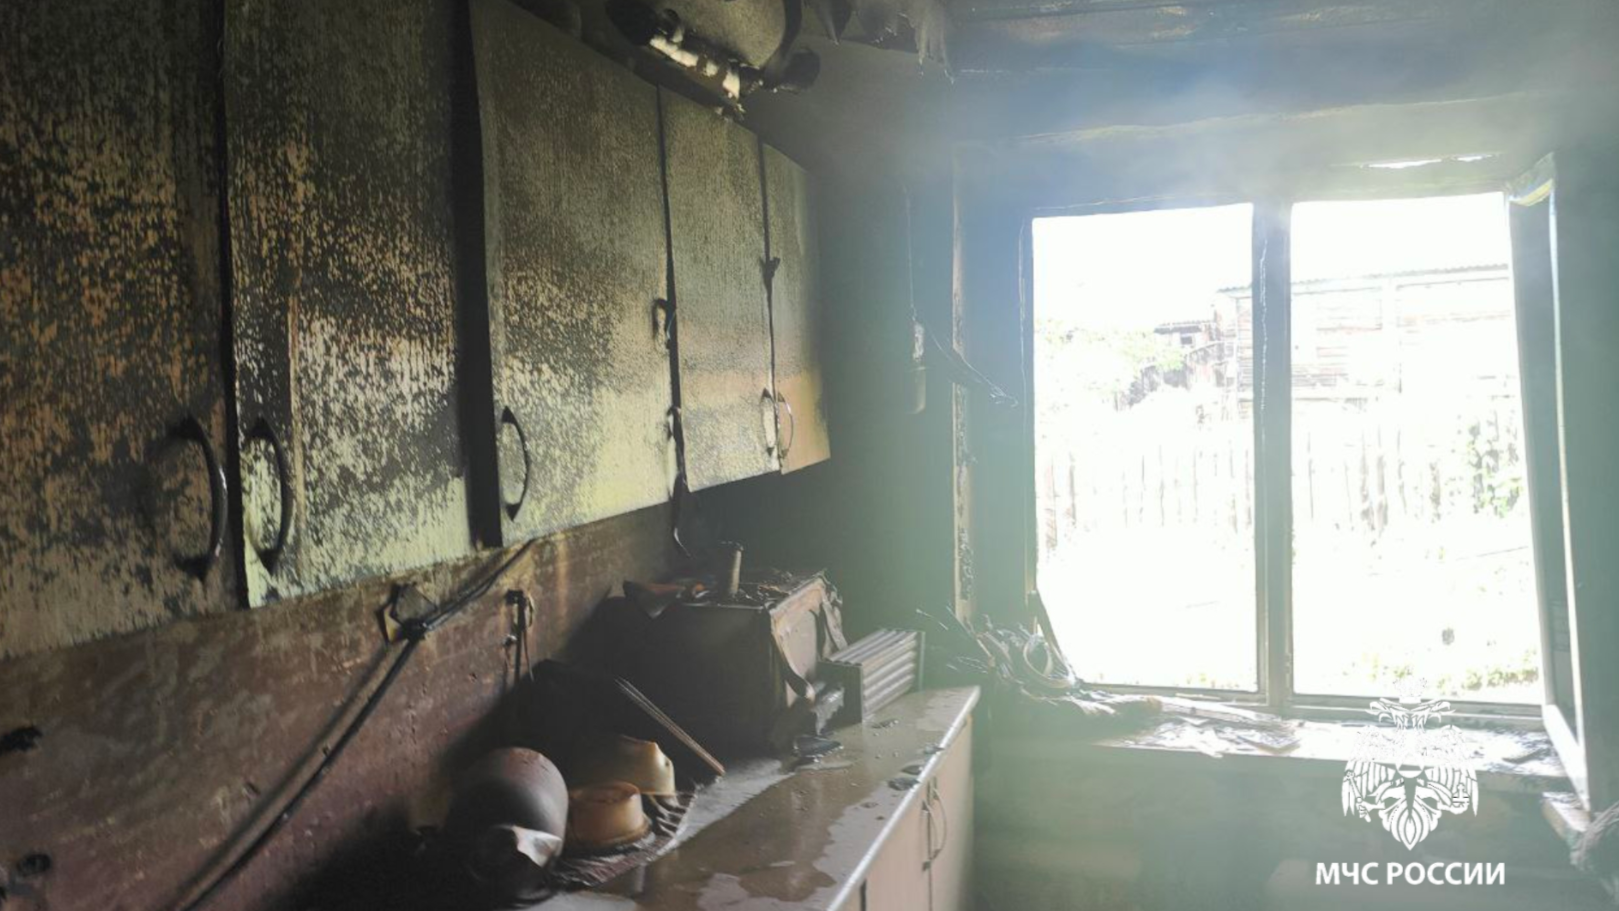 Грозовые разряды стали причиной возгорания жилого дома в Ульяновской области 